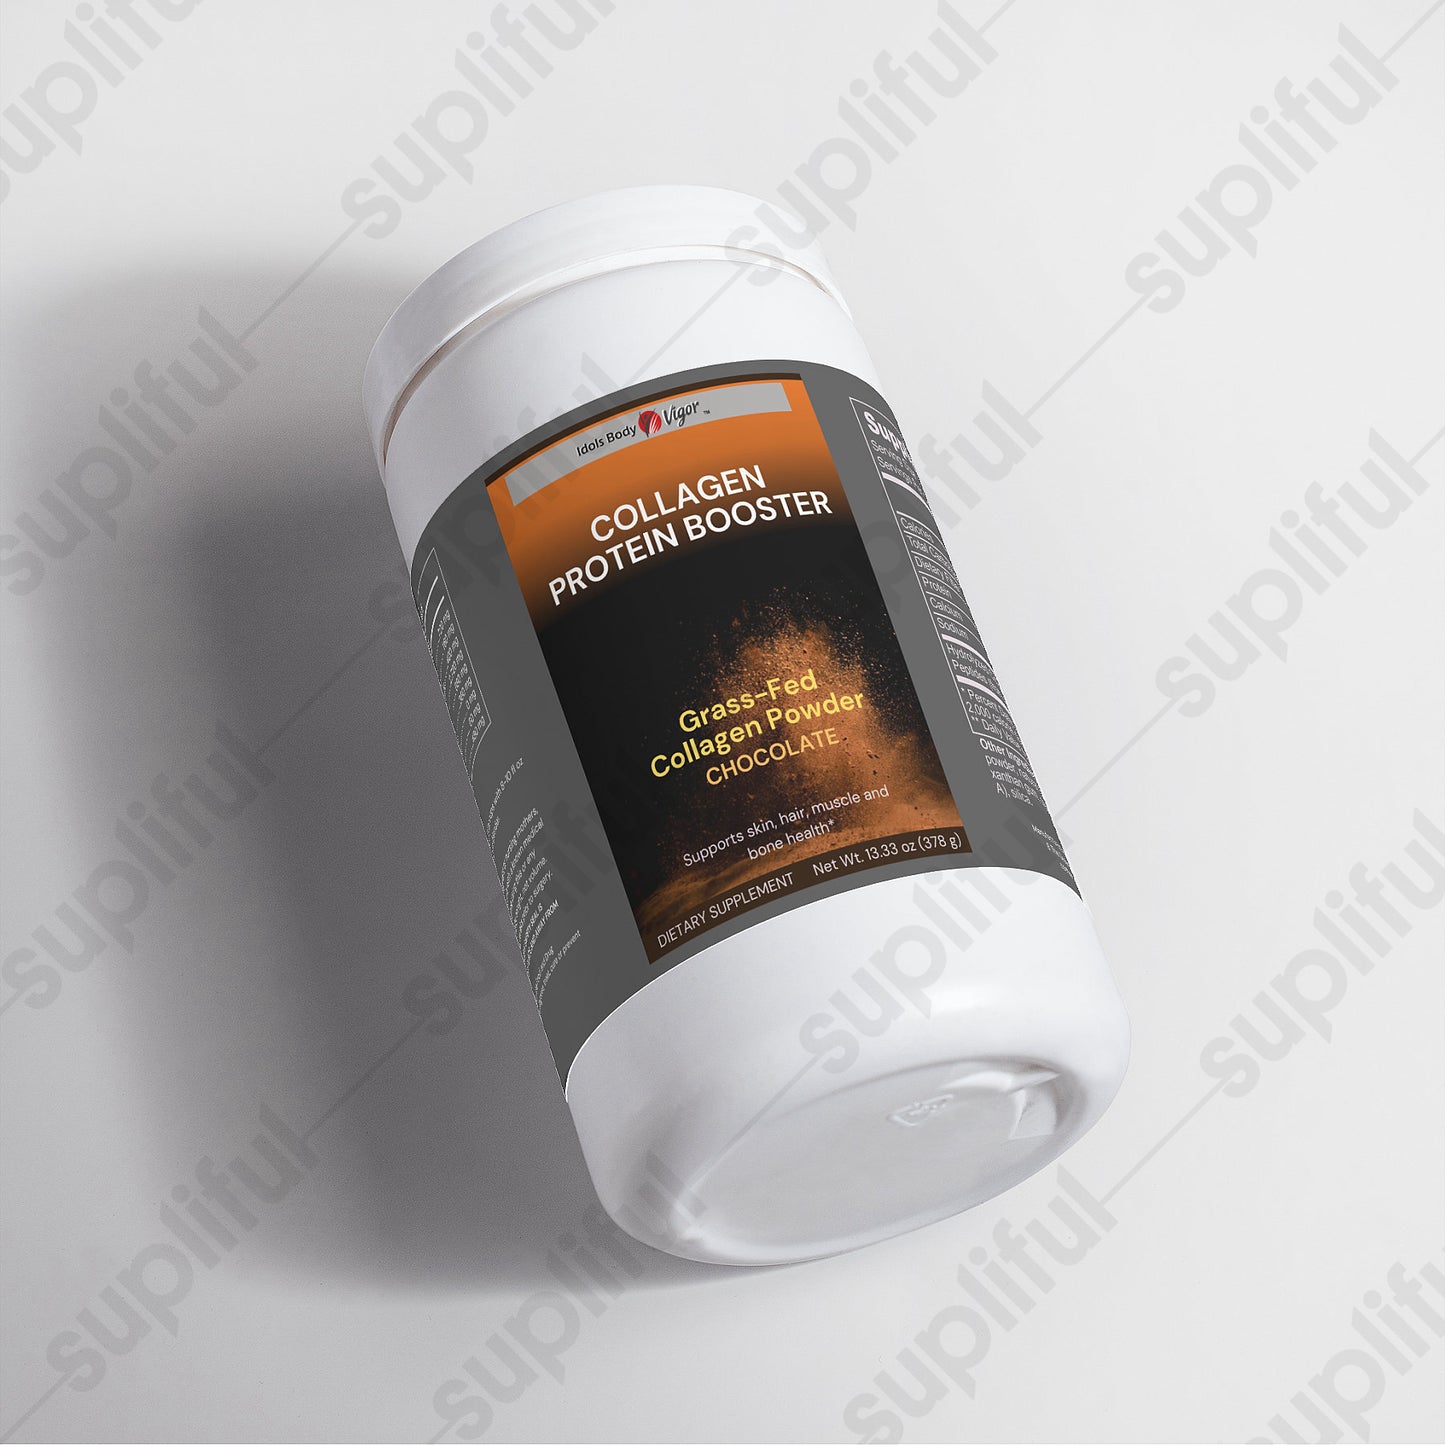 Collagen Protein Booster Grass-Fed Collagen Powder (Chocolate)